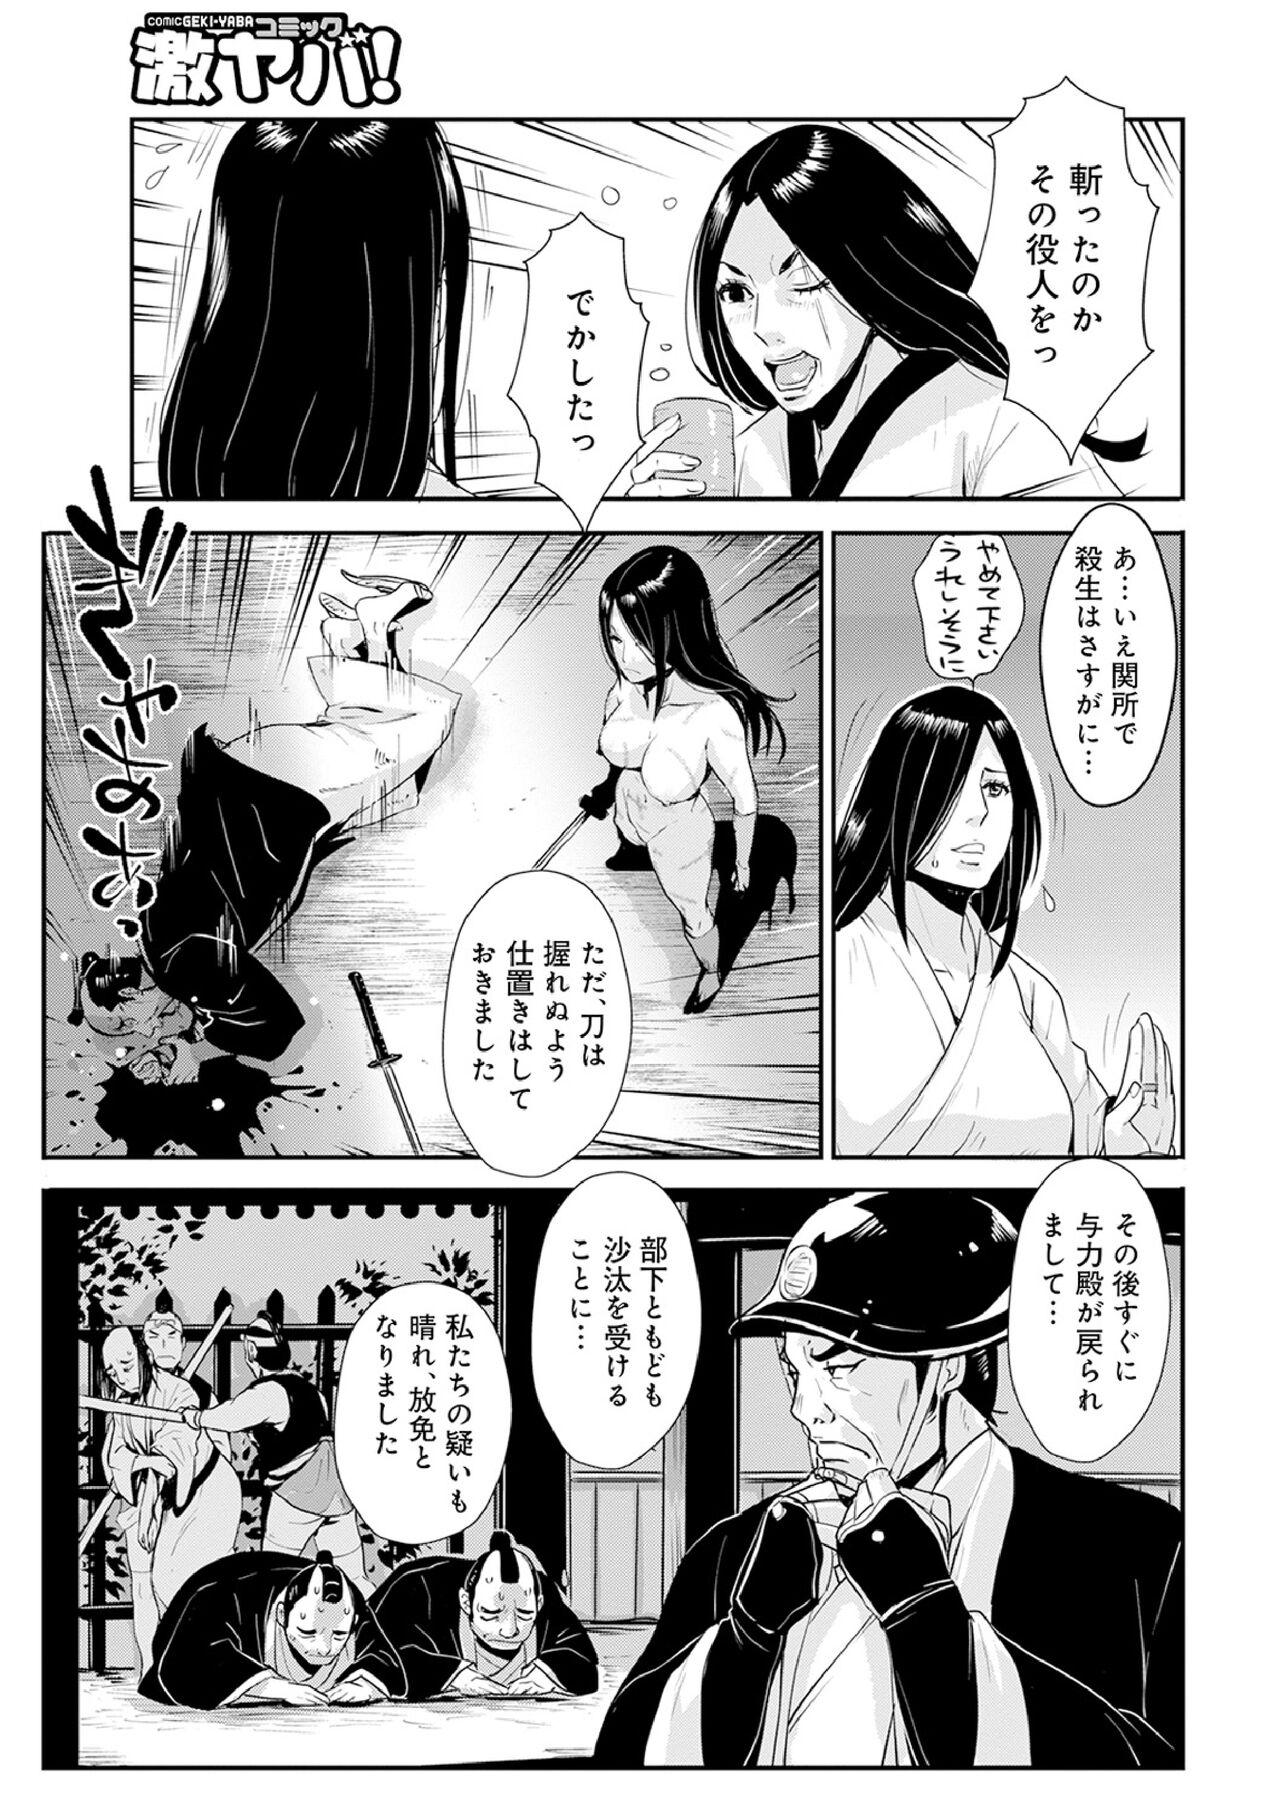 Chica Harami samurai 12 Couple Porn - Page 7